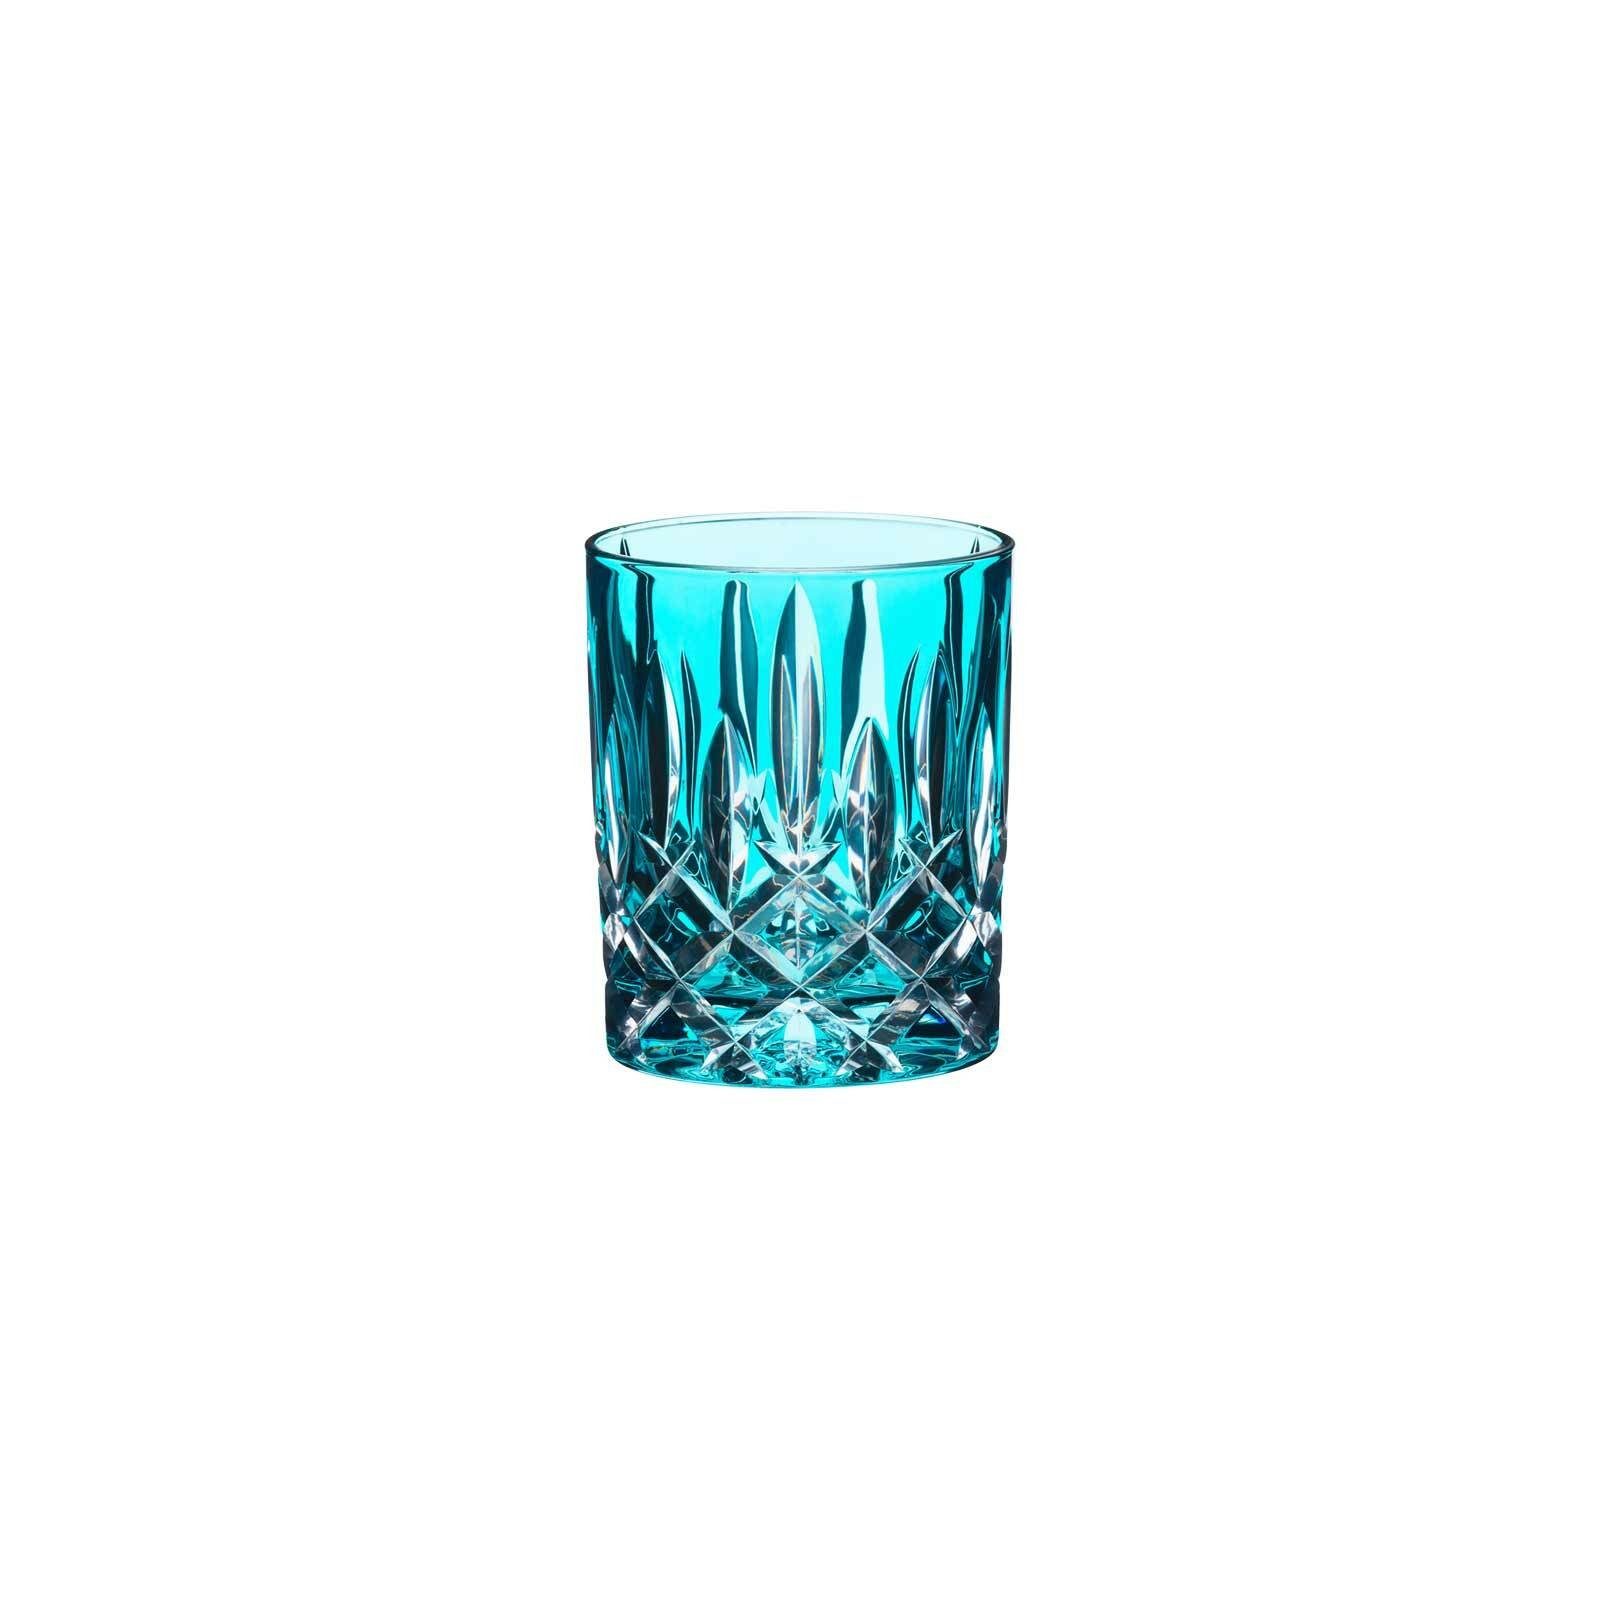 295 RIEDEL Whiskyglas Glas Glas ml, Laudon Whiskyglas Türkis